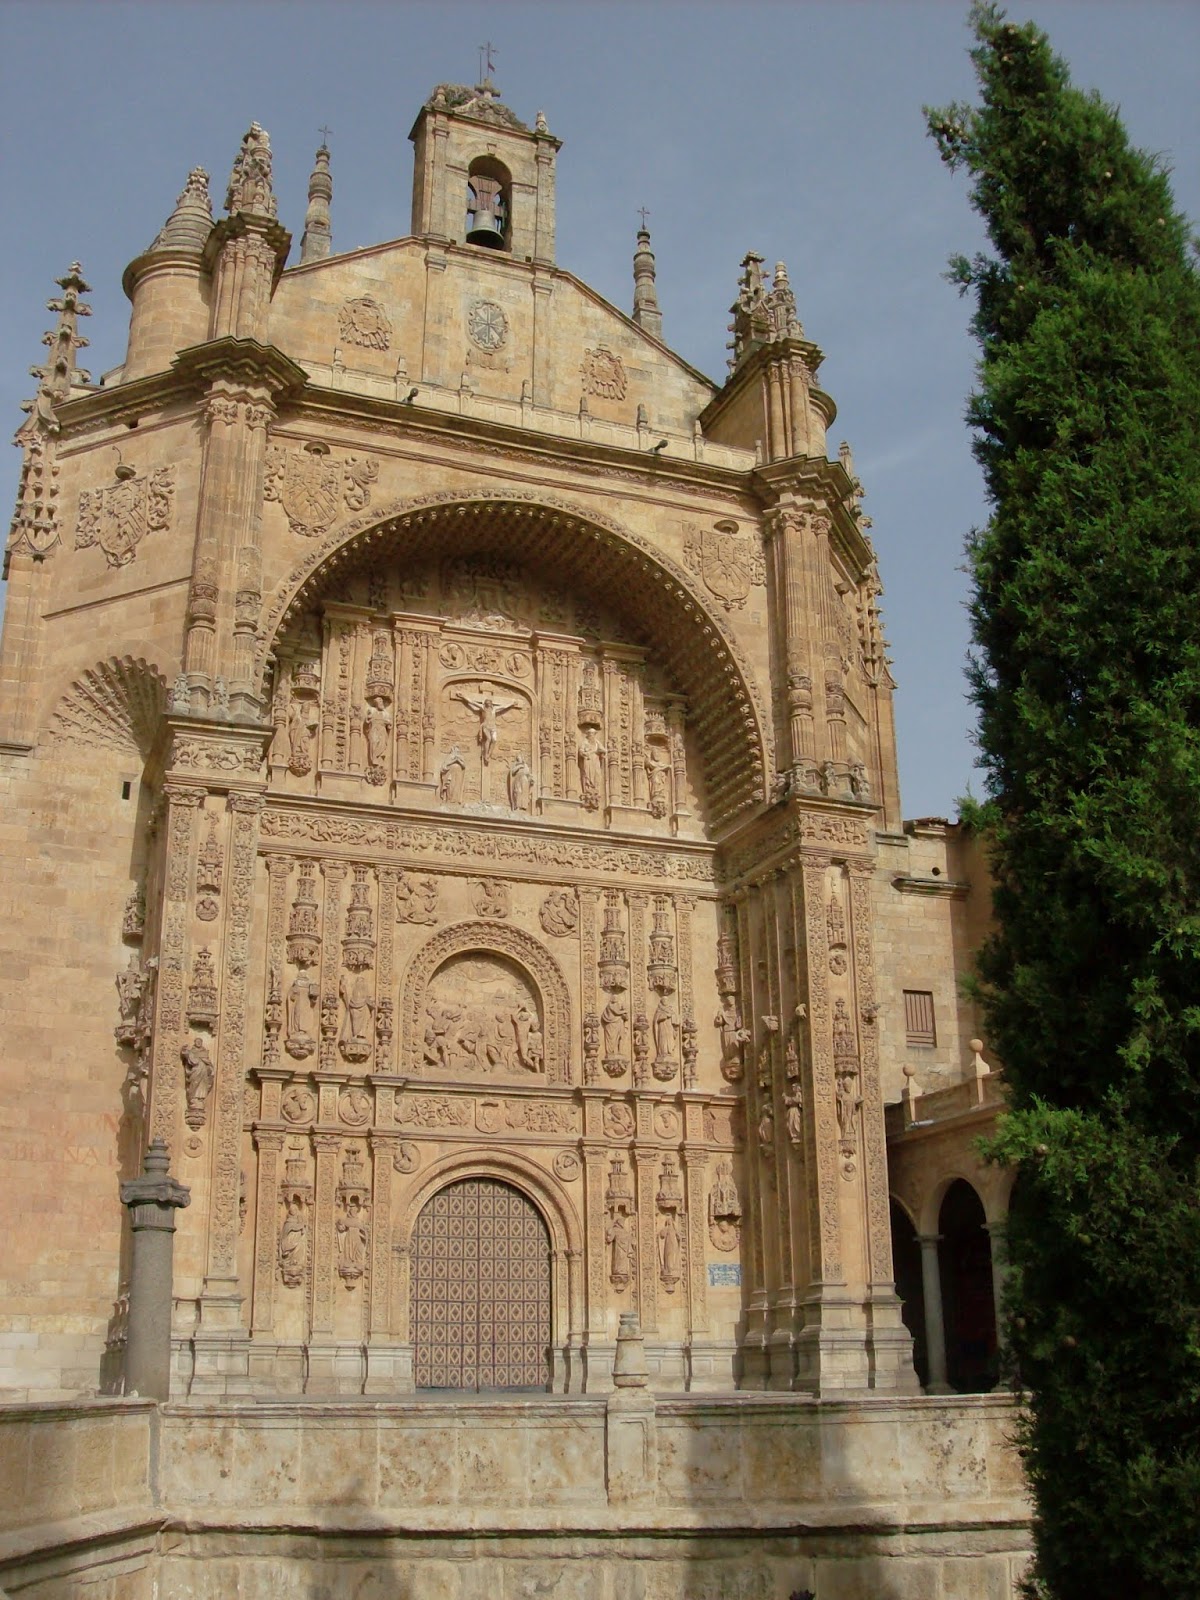 Arte magistral: Convento de San Esteban de Salamanca